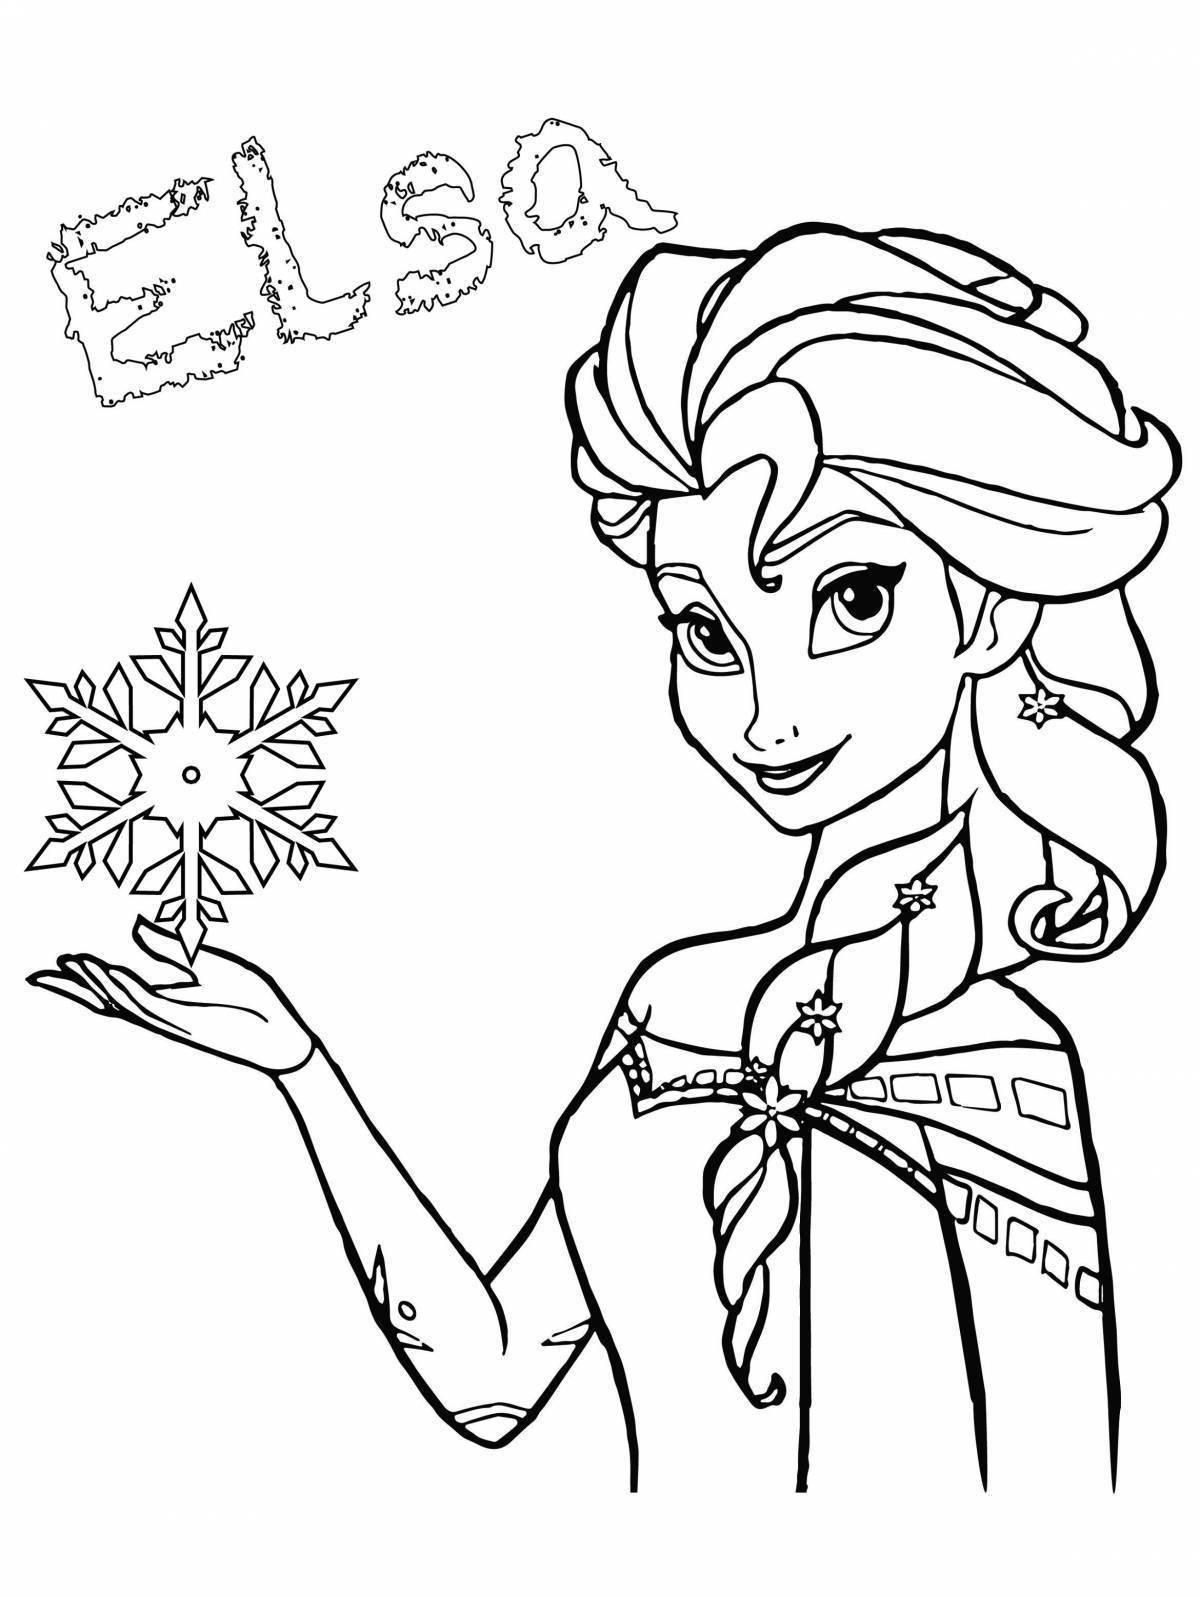 Elsa's wonderful coloring by numbers